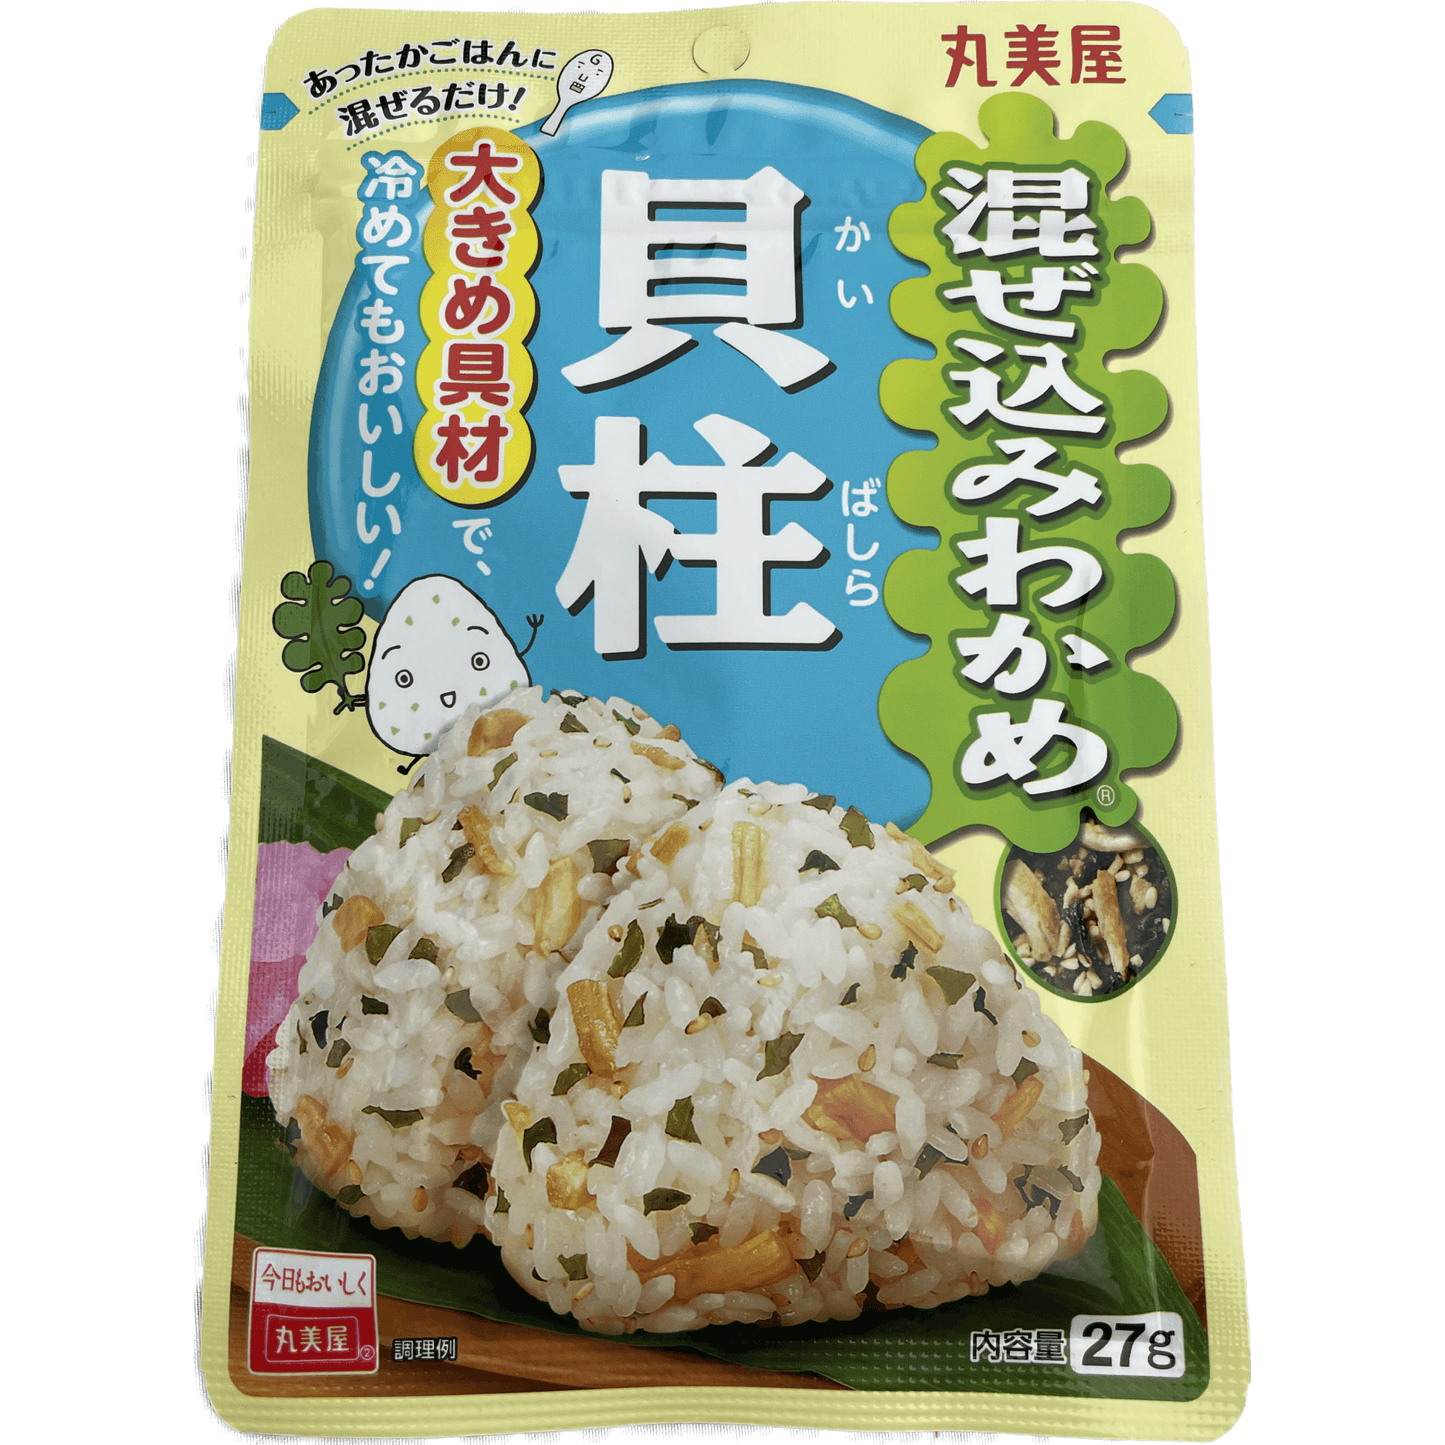 Marumiya Mixed Seaweed (Scallop) 丸美屋　混ぜ込みわかめ＜貝柱＞27g - RiceWineShop